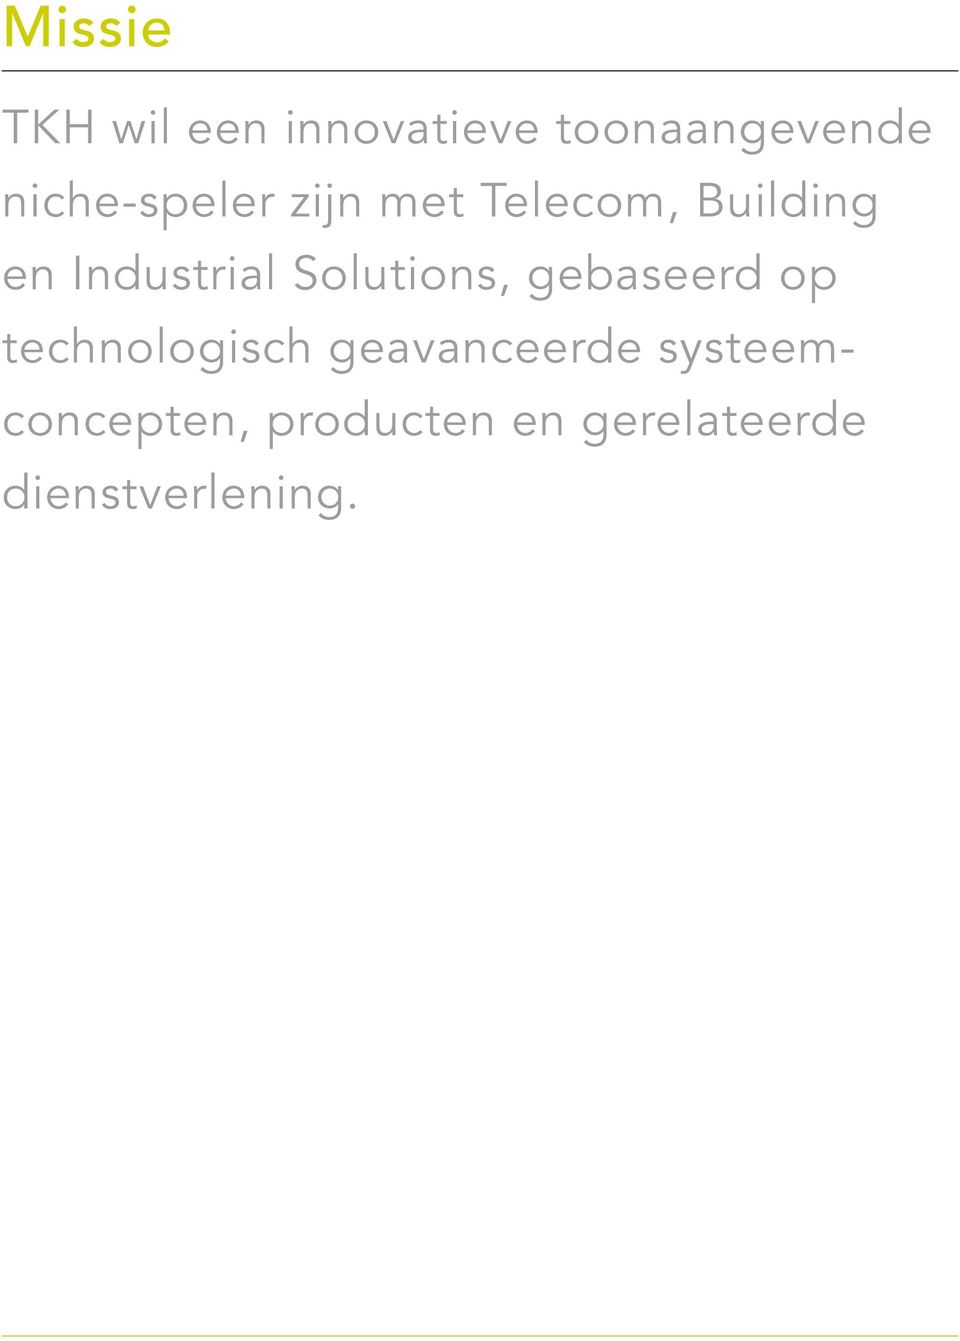 Industrial Solutions, gebaseerd op technologisch